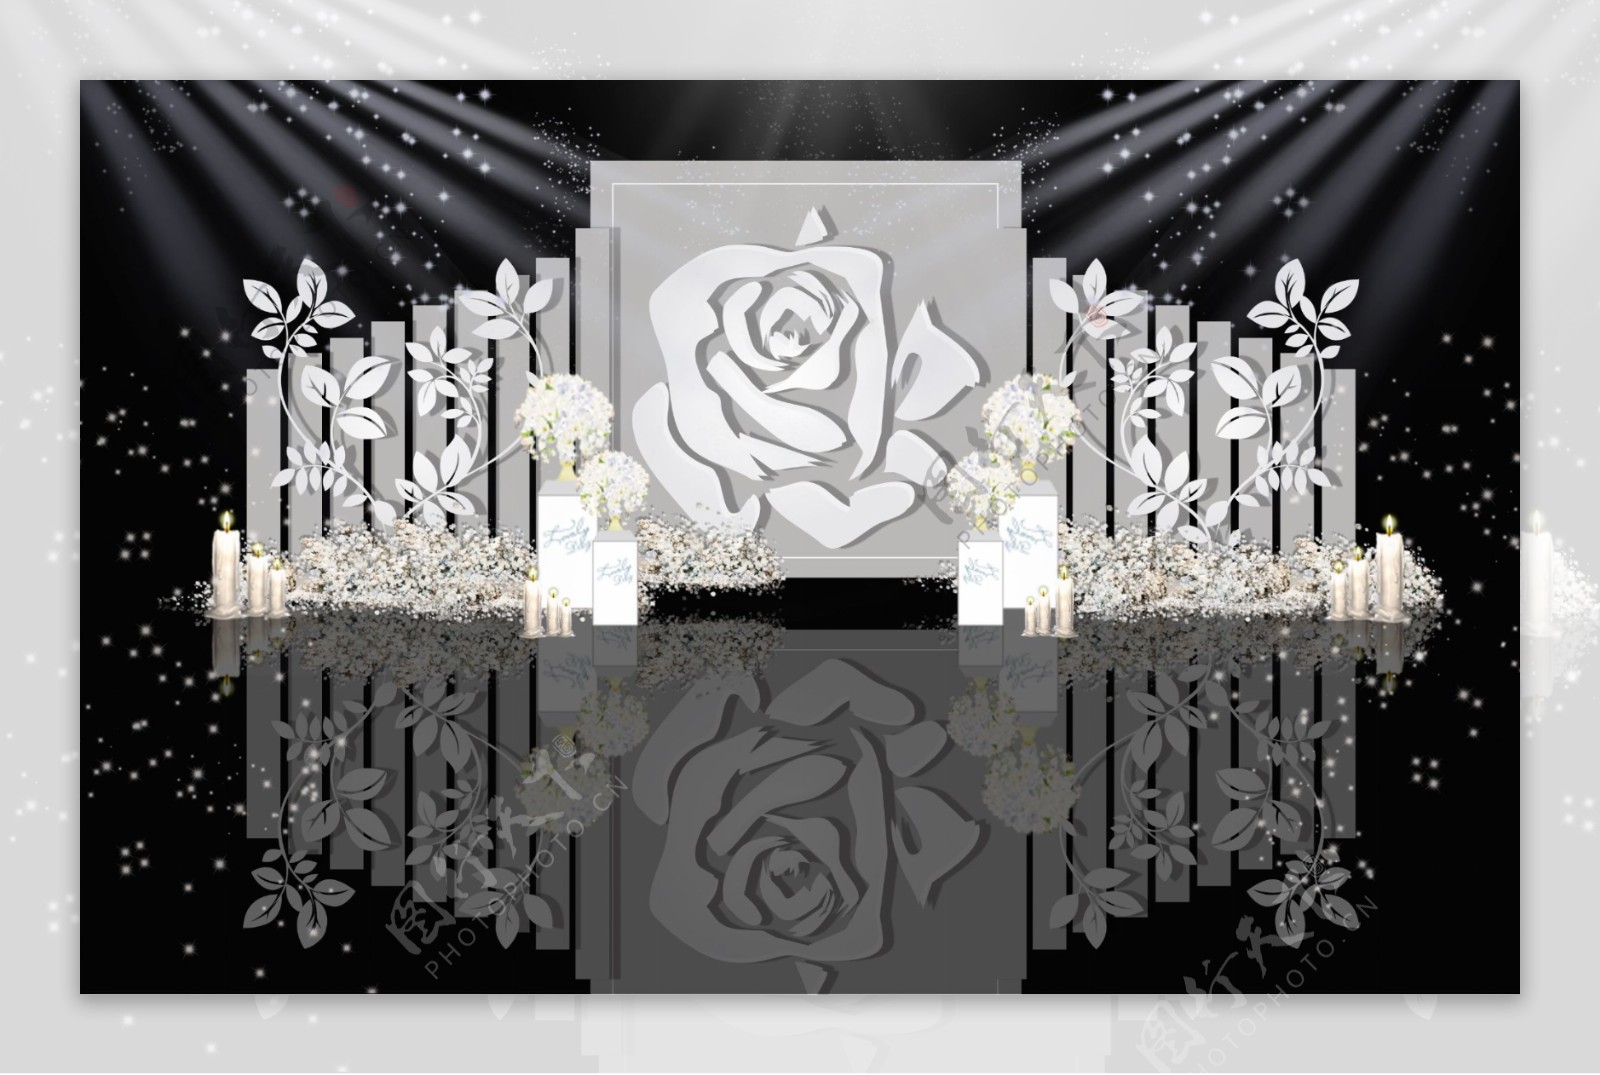 灰色系白玫瑰婚礼效果图